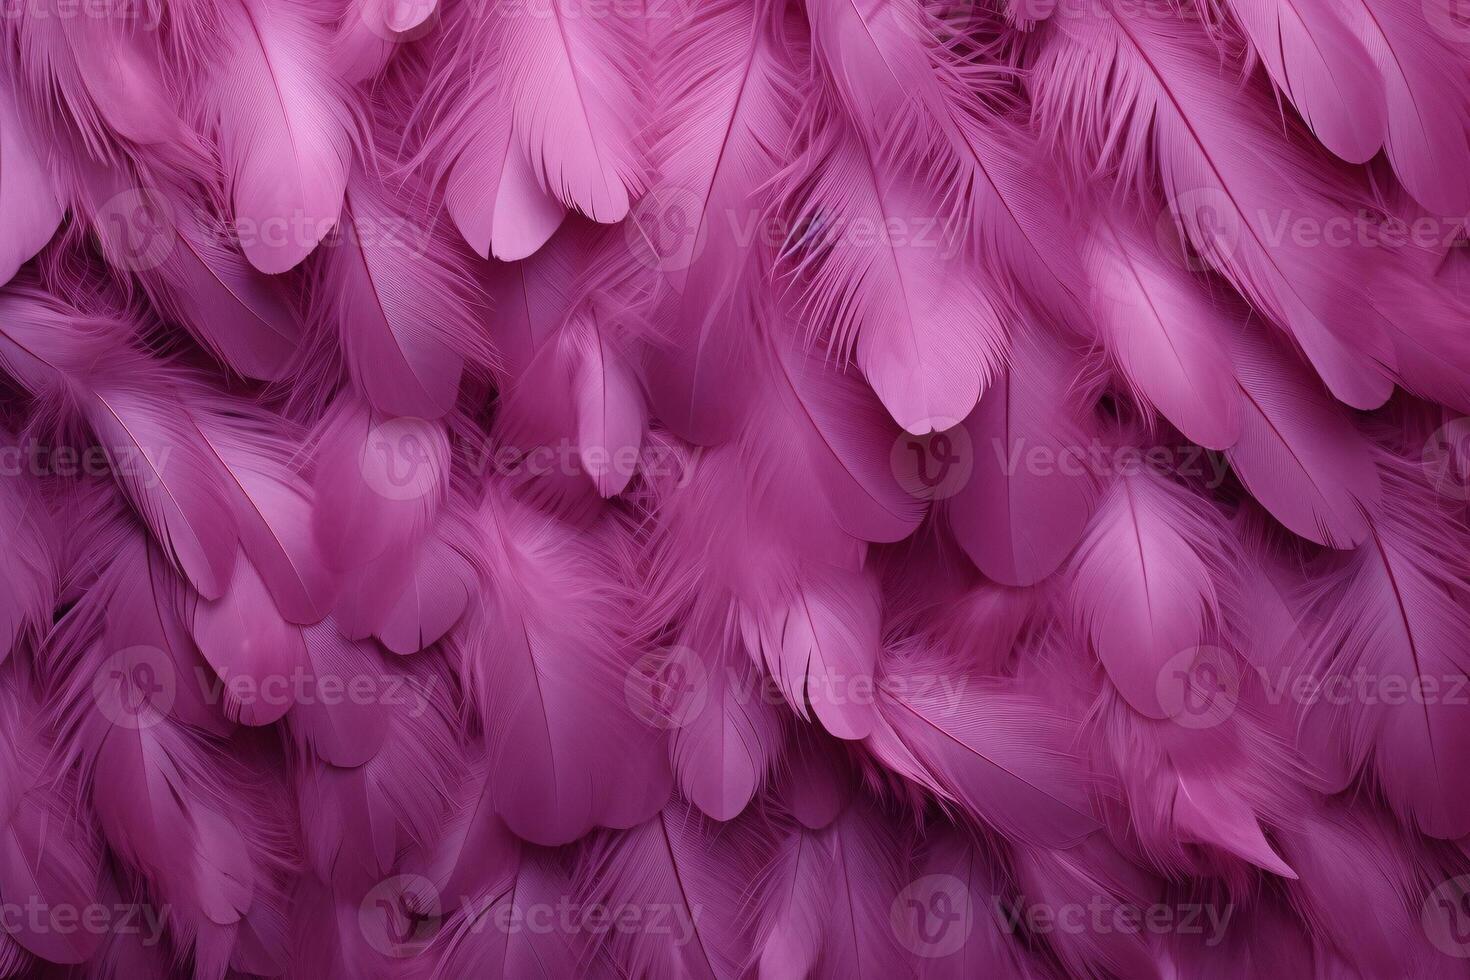 Rosa flauschige Gefieder Hintergrund, Rosa Gefieder Muster, schön Gefieder Hintergrund, Gefieder Hintergrund, Vogel Gefieder Muster, foto